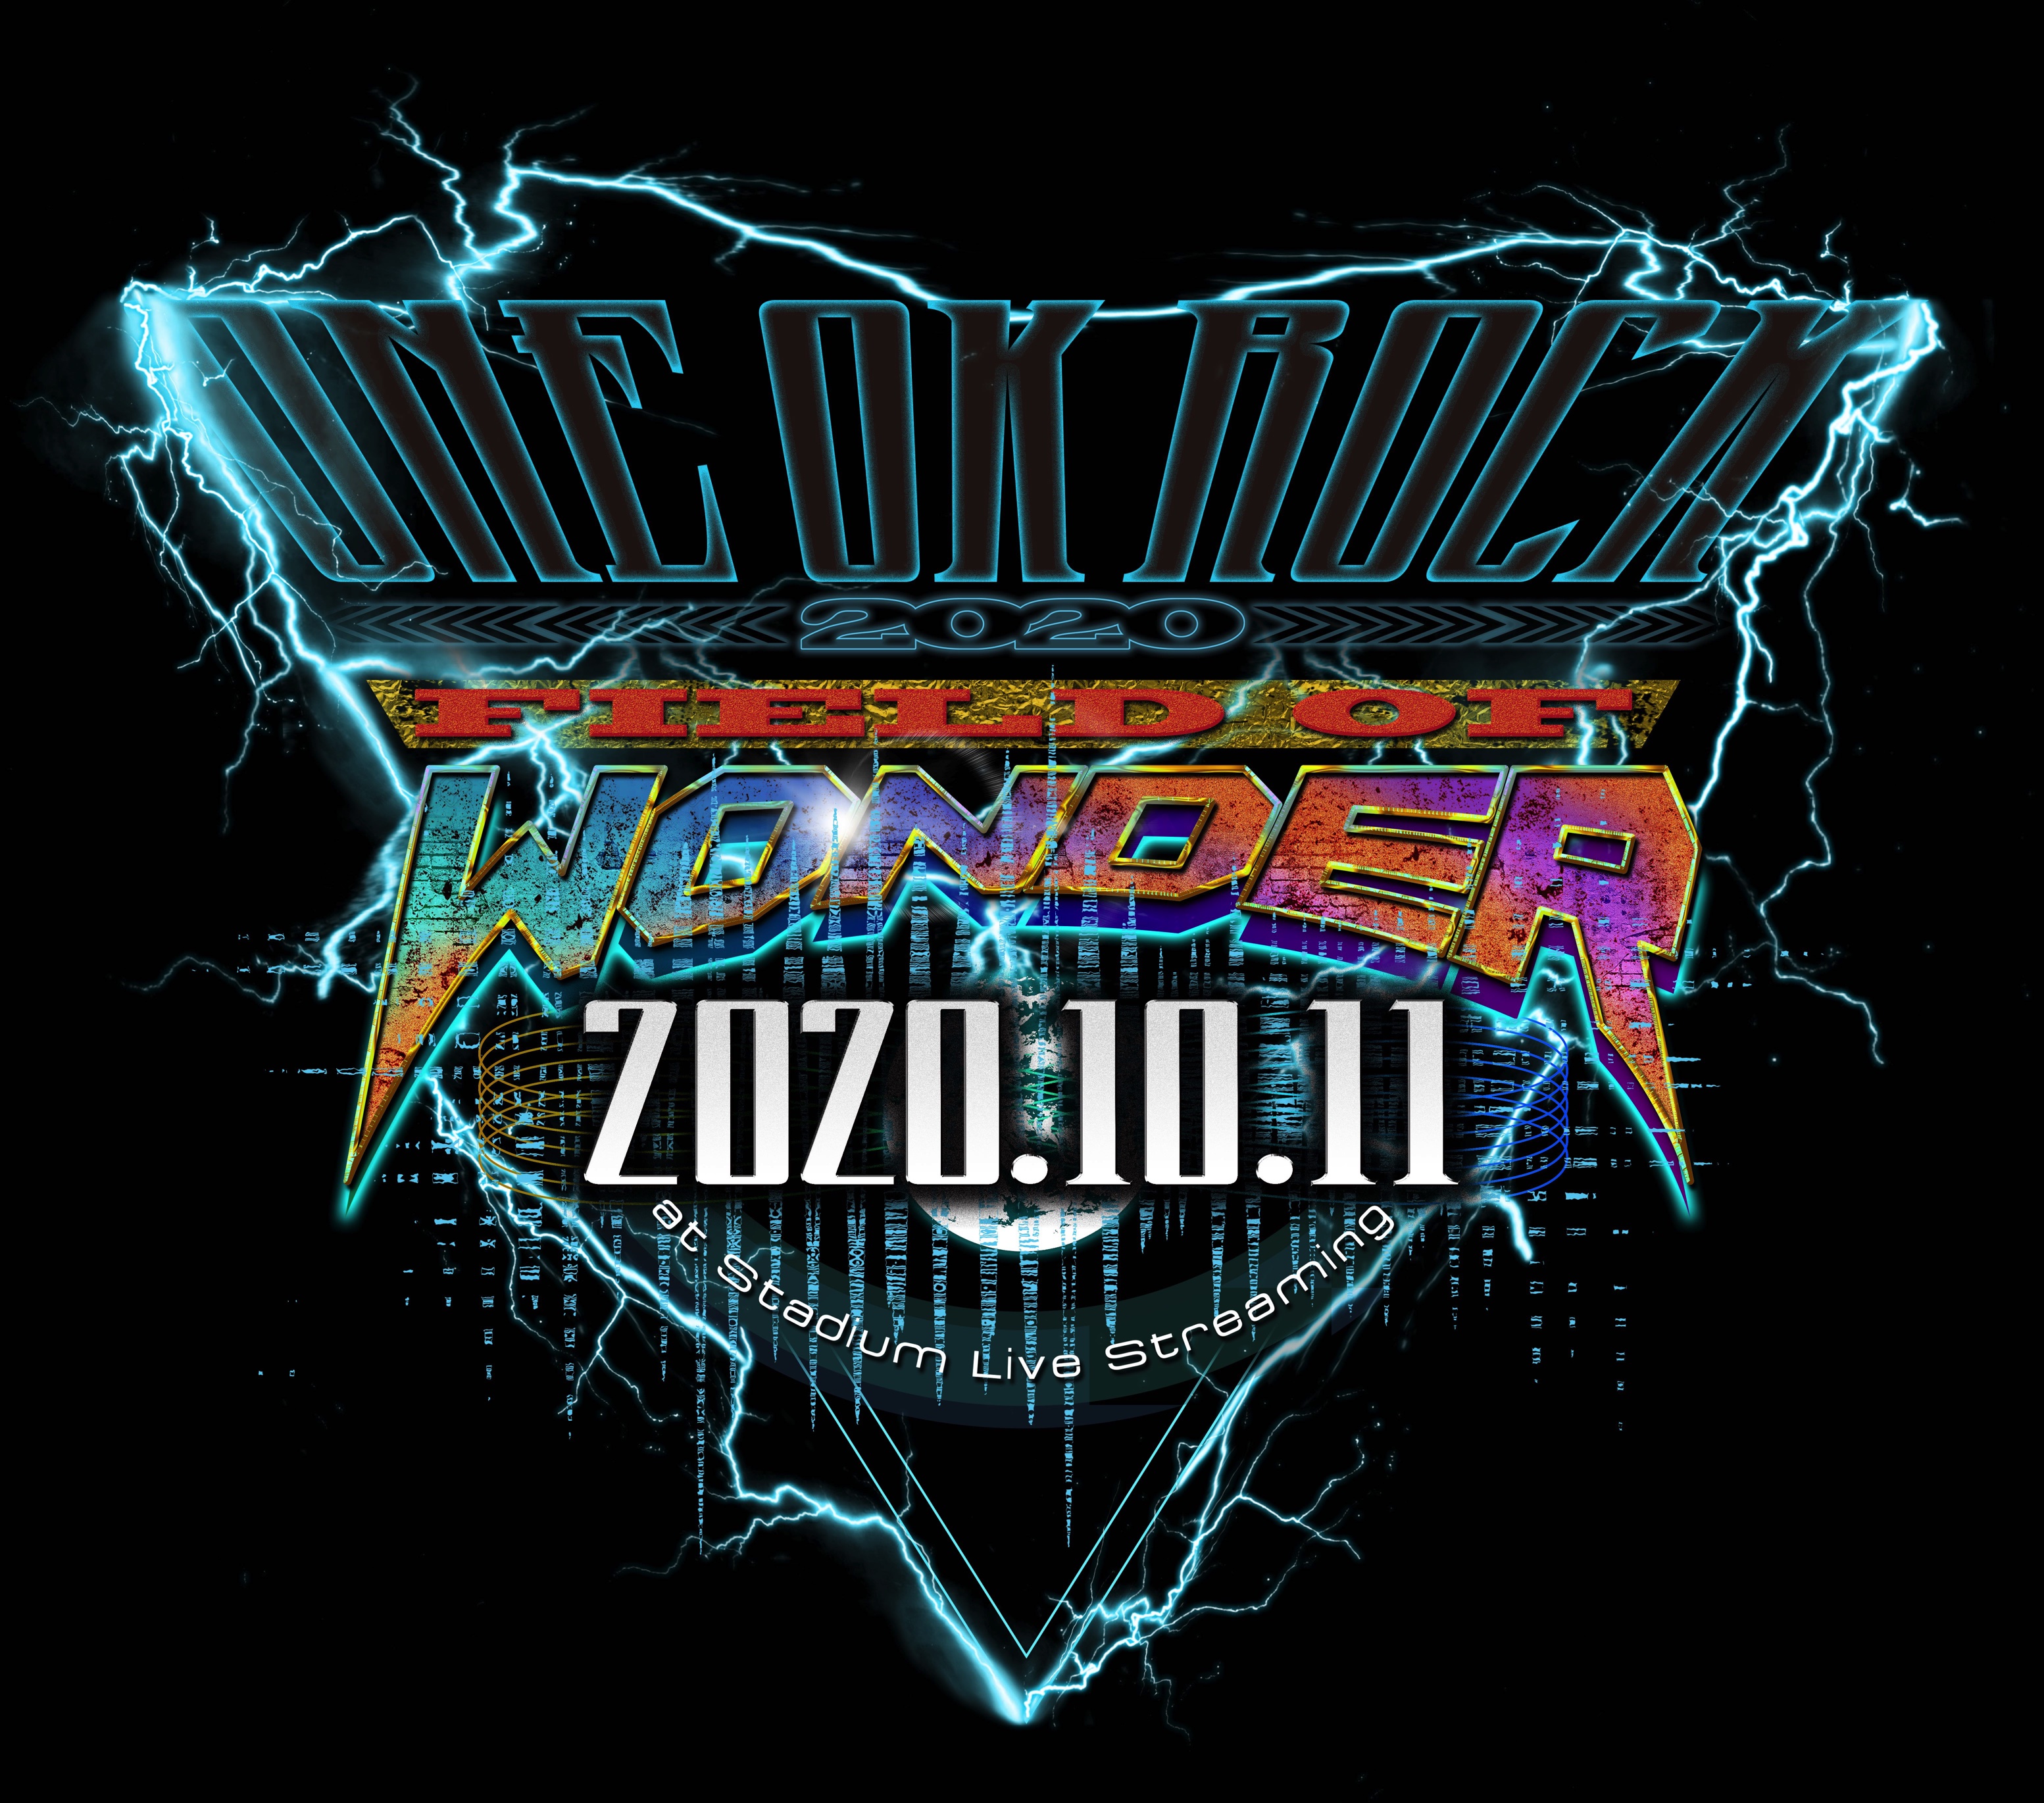 ワンオク スタジアム オンラインライブ「FIELD OF WONDER」2020 詳細【ONE OK ROCK】ファンブログ